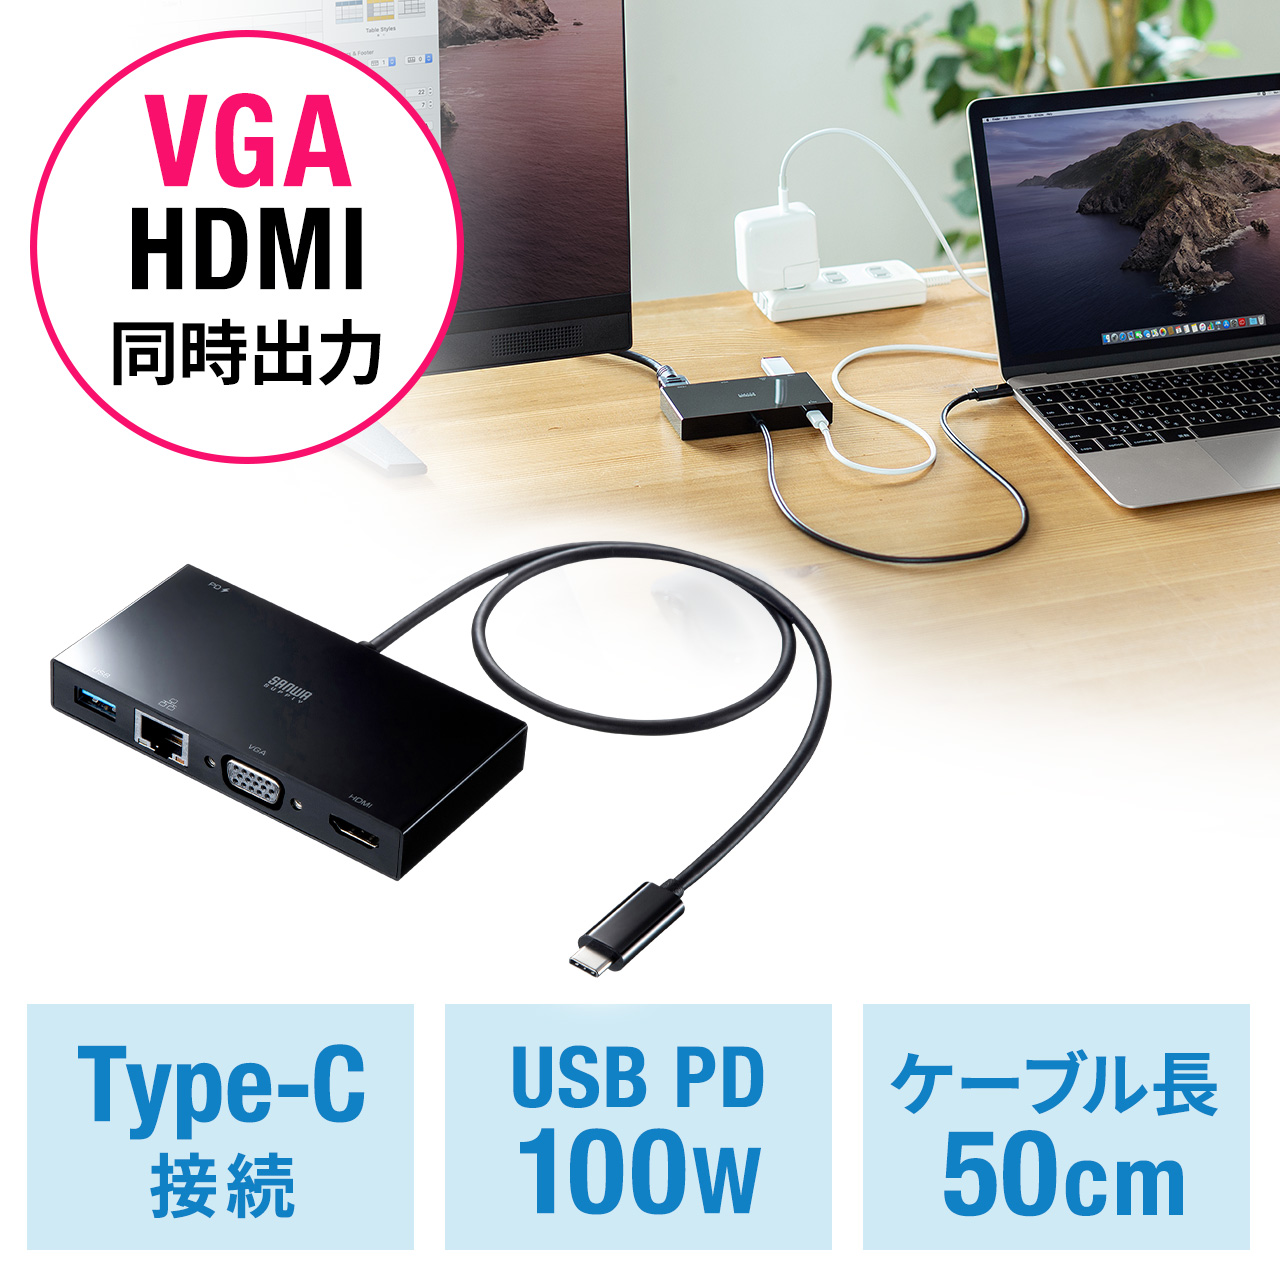 サンワダイレクト モバイルプロジェクター HDMI パソコン USBメモリ SDカード 対応 最大45ルーメン ポータブルプロジェクター - 2